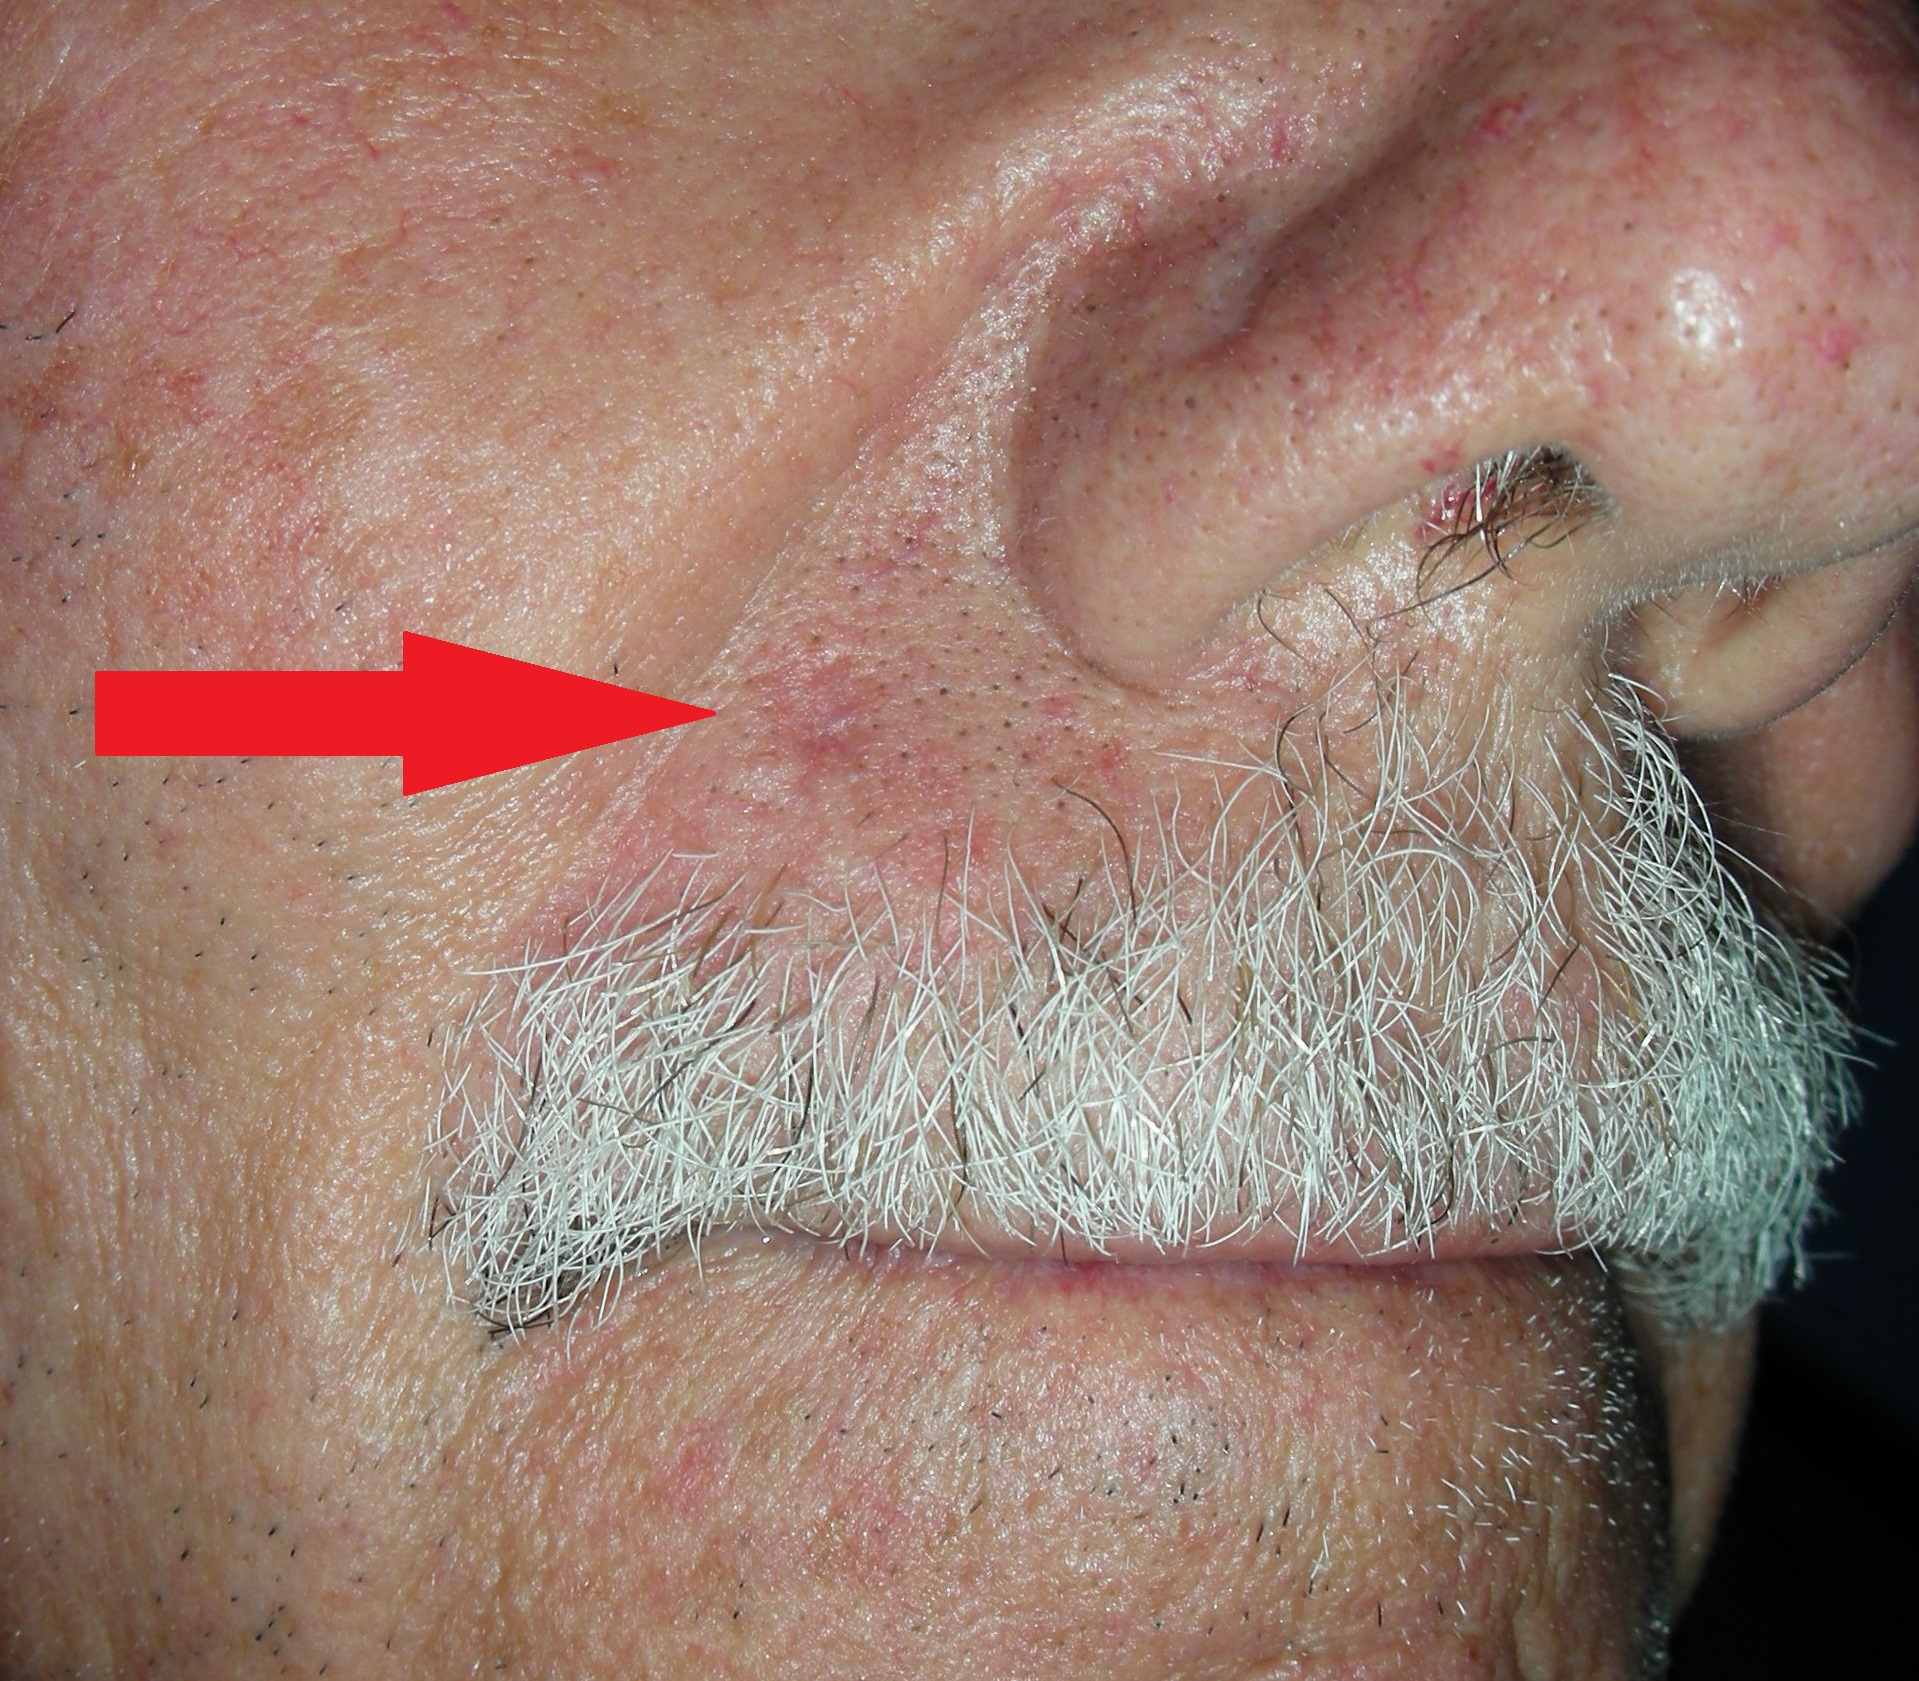 Image of skin cancer upper lip